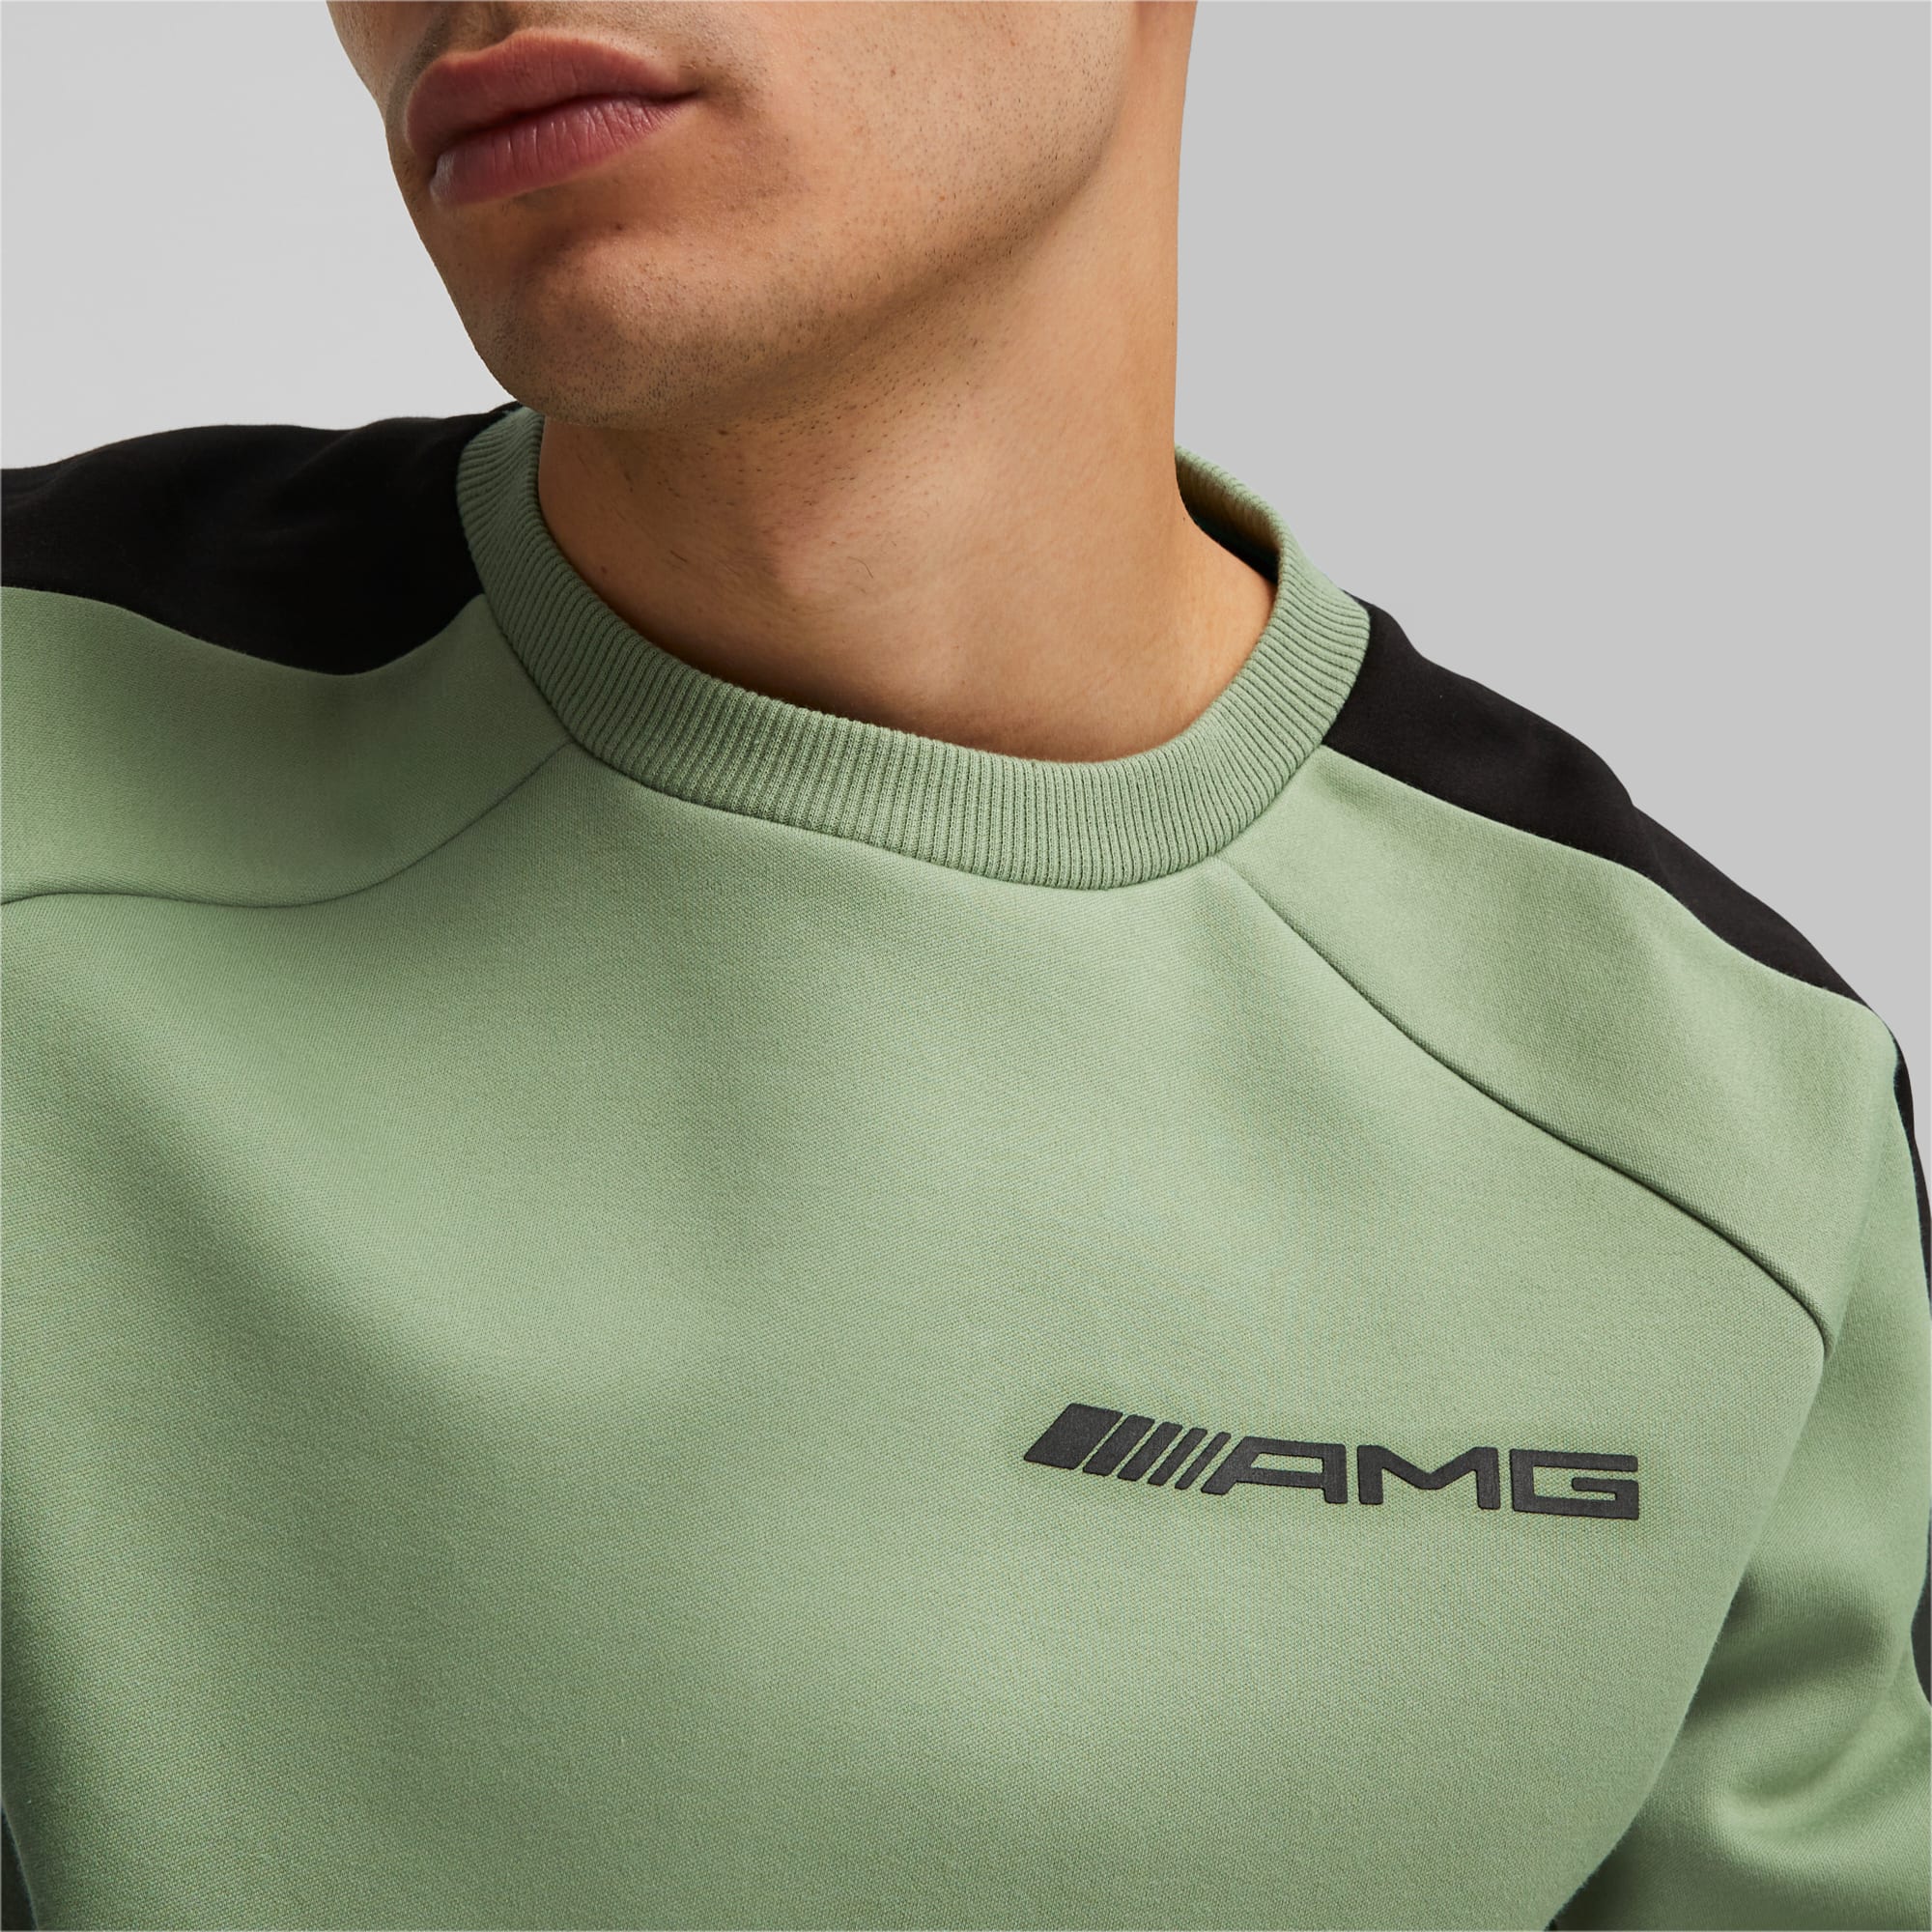 PUMA Mercedes-AMG Sweatshirt Herren, Grün, Größe: XL, Kleidung